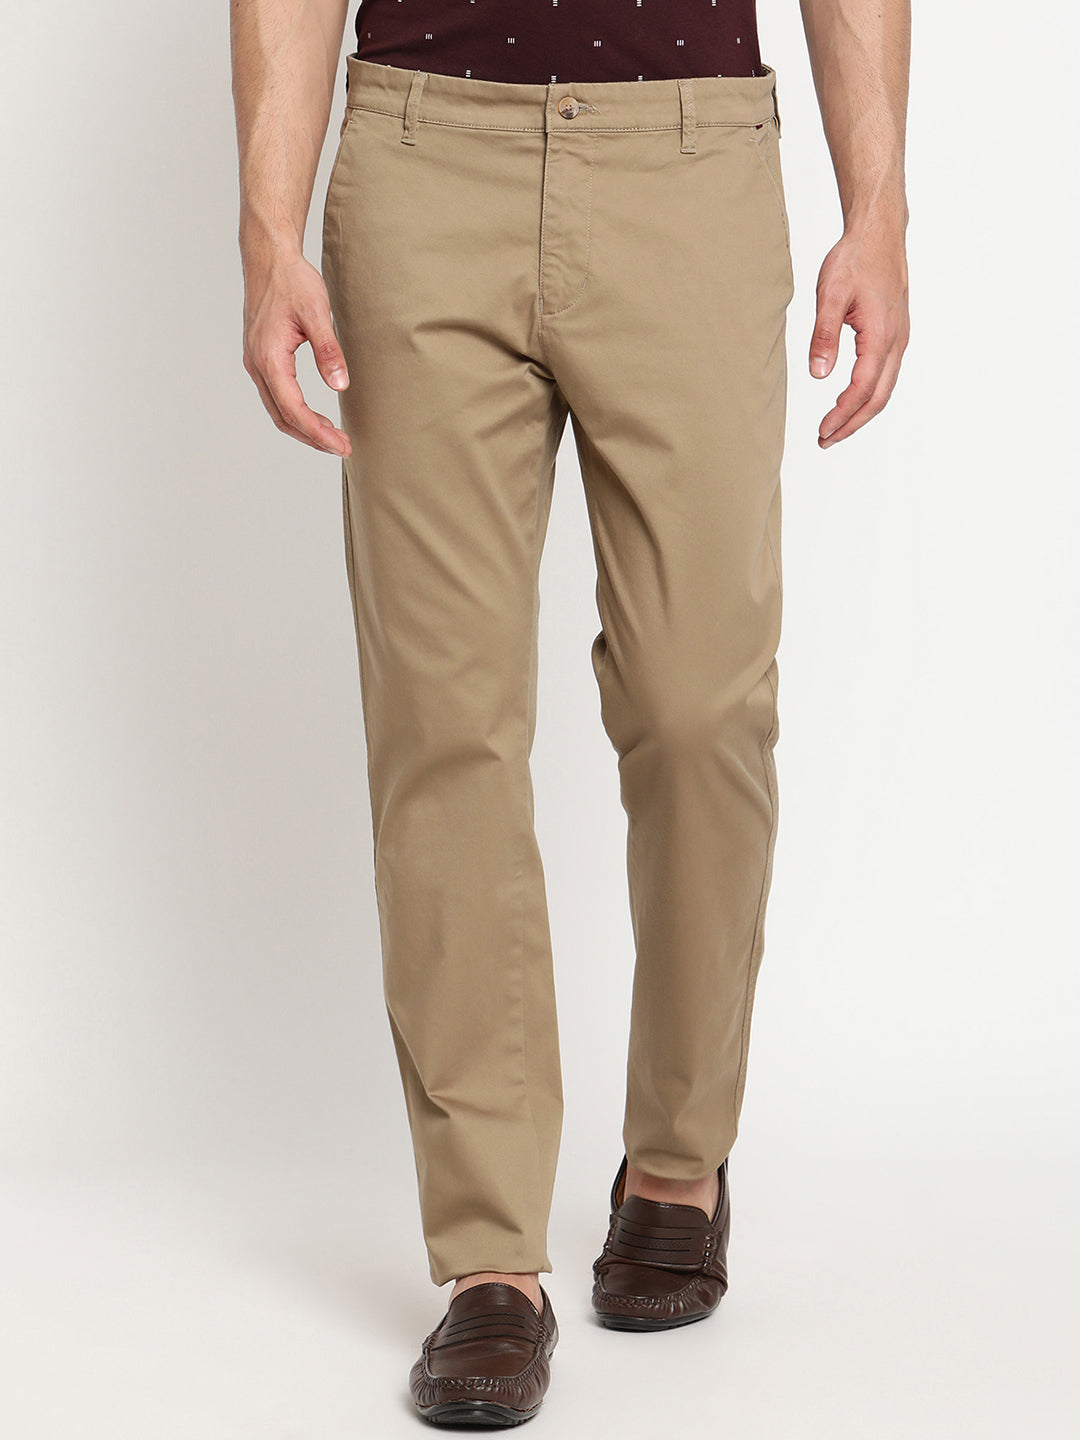 Casual Mens Camel Color Cotton Lycra Pants 2836 Waist Size